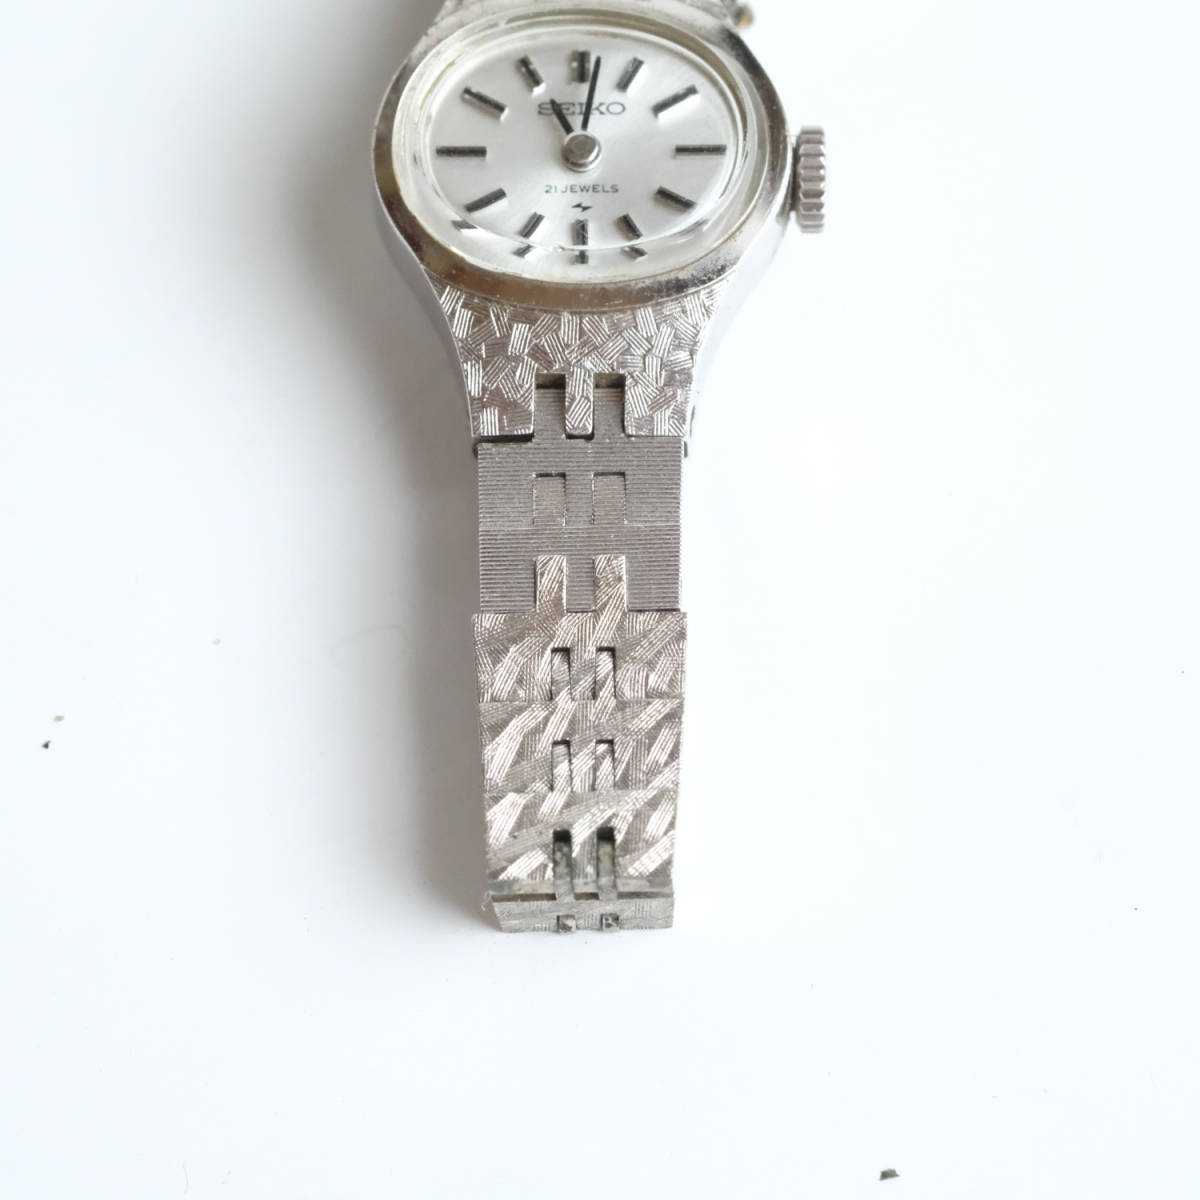 SEIKO セイコー 21石 21JEWELS レディース腕時計 0N0604 WGP 11-7370 ジャンク品_画像3